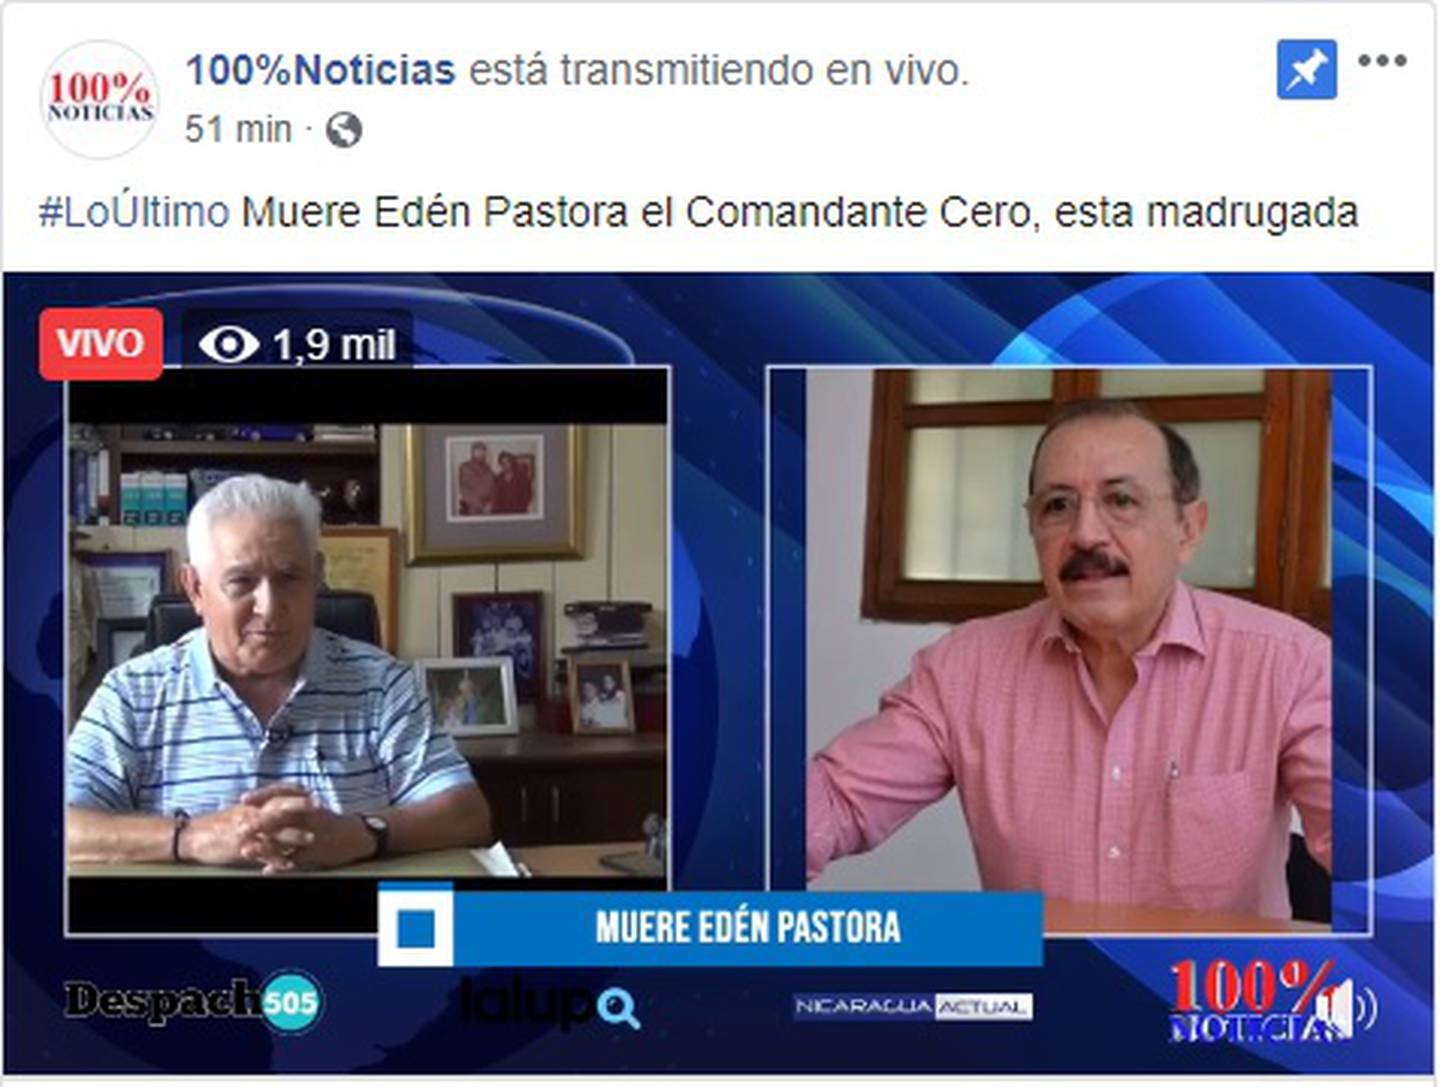 El medio nicaragüense que se transmite desde Costa Rica, 100% Noticias, confirma la muerte de Edén Pastora